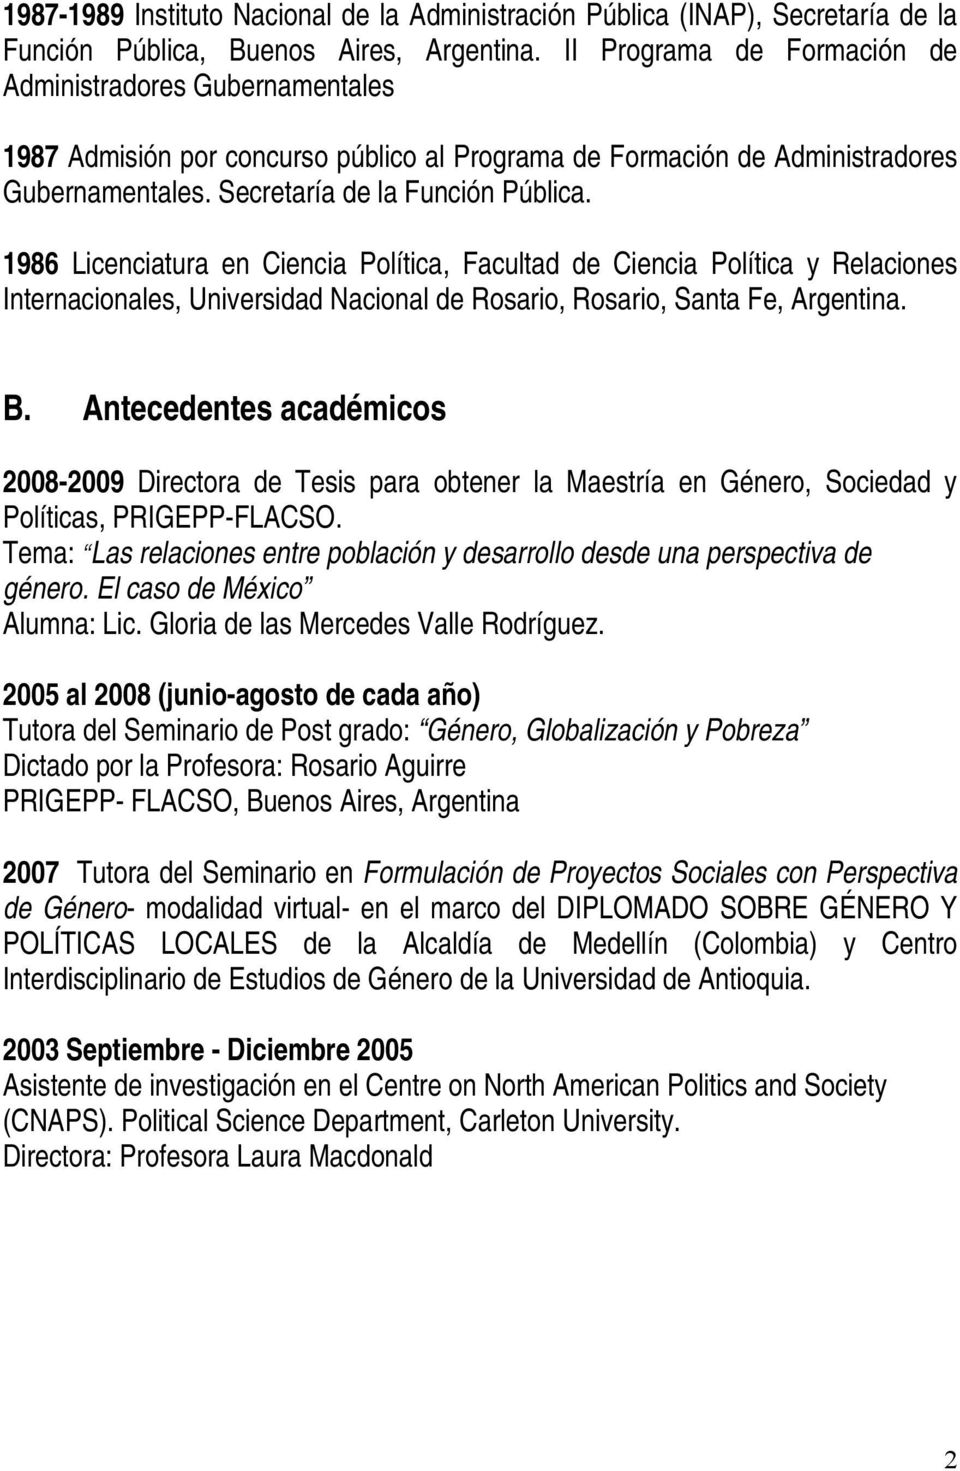 1986 Licenciatura en Ciencia Política, Facultad de Ciencia Política y Relaciones Internacionales, Universidad Nacional de Rosario, Rosario, Santa Fe, Argentina. B.